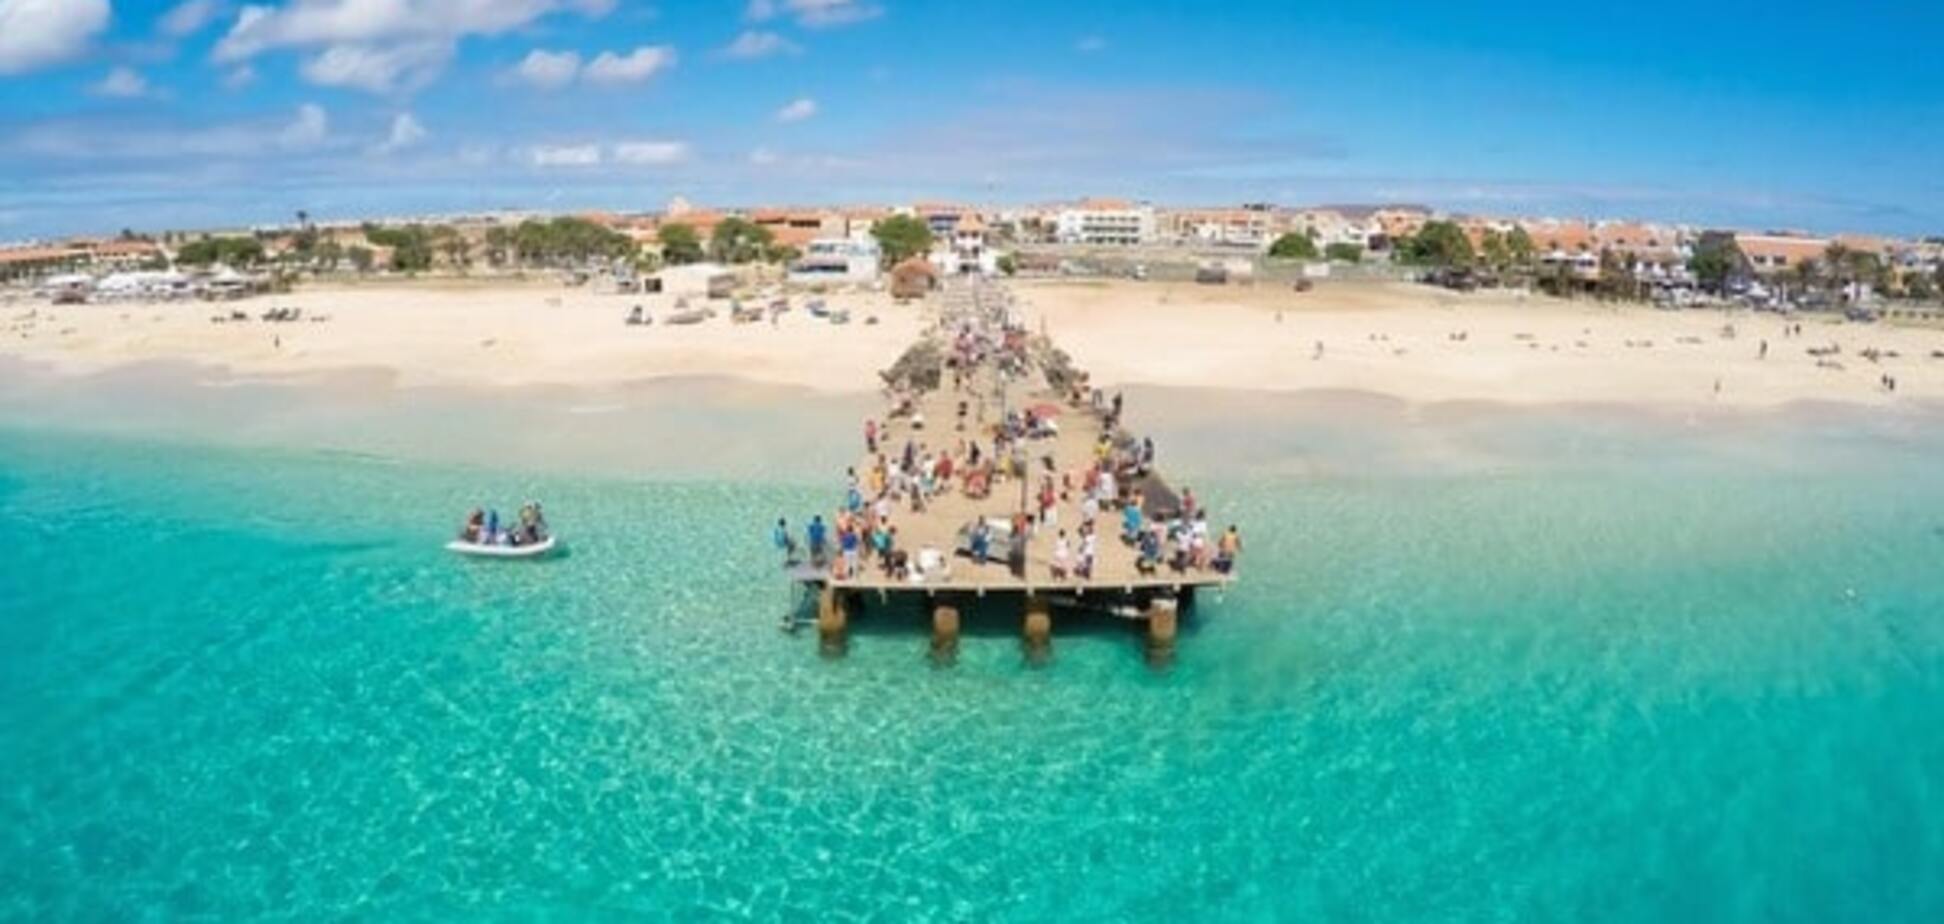 Лучшие пляжи мира: опубликована фотоподборка самых привлекательных мест для отдыха 